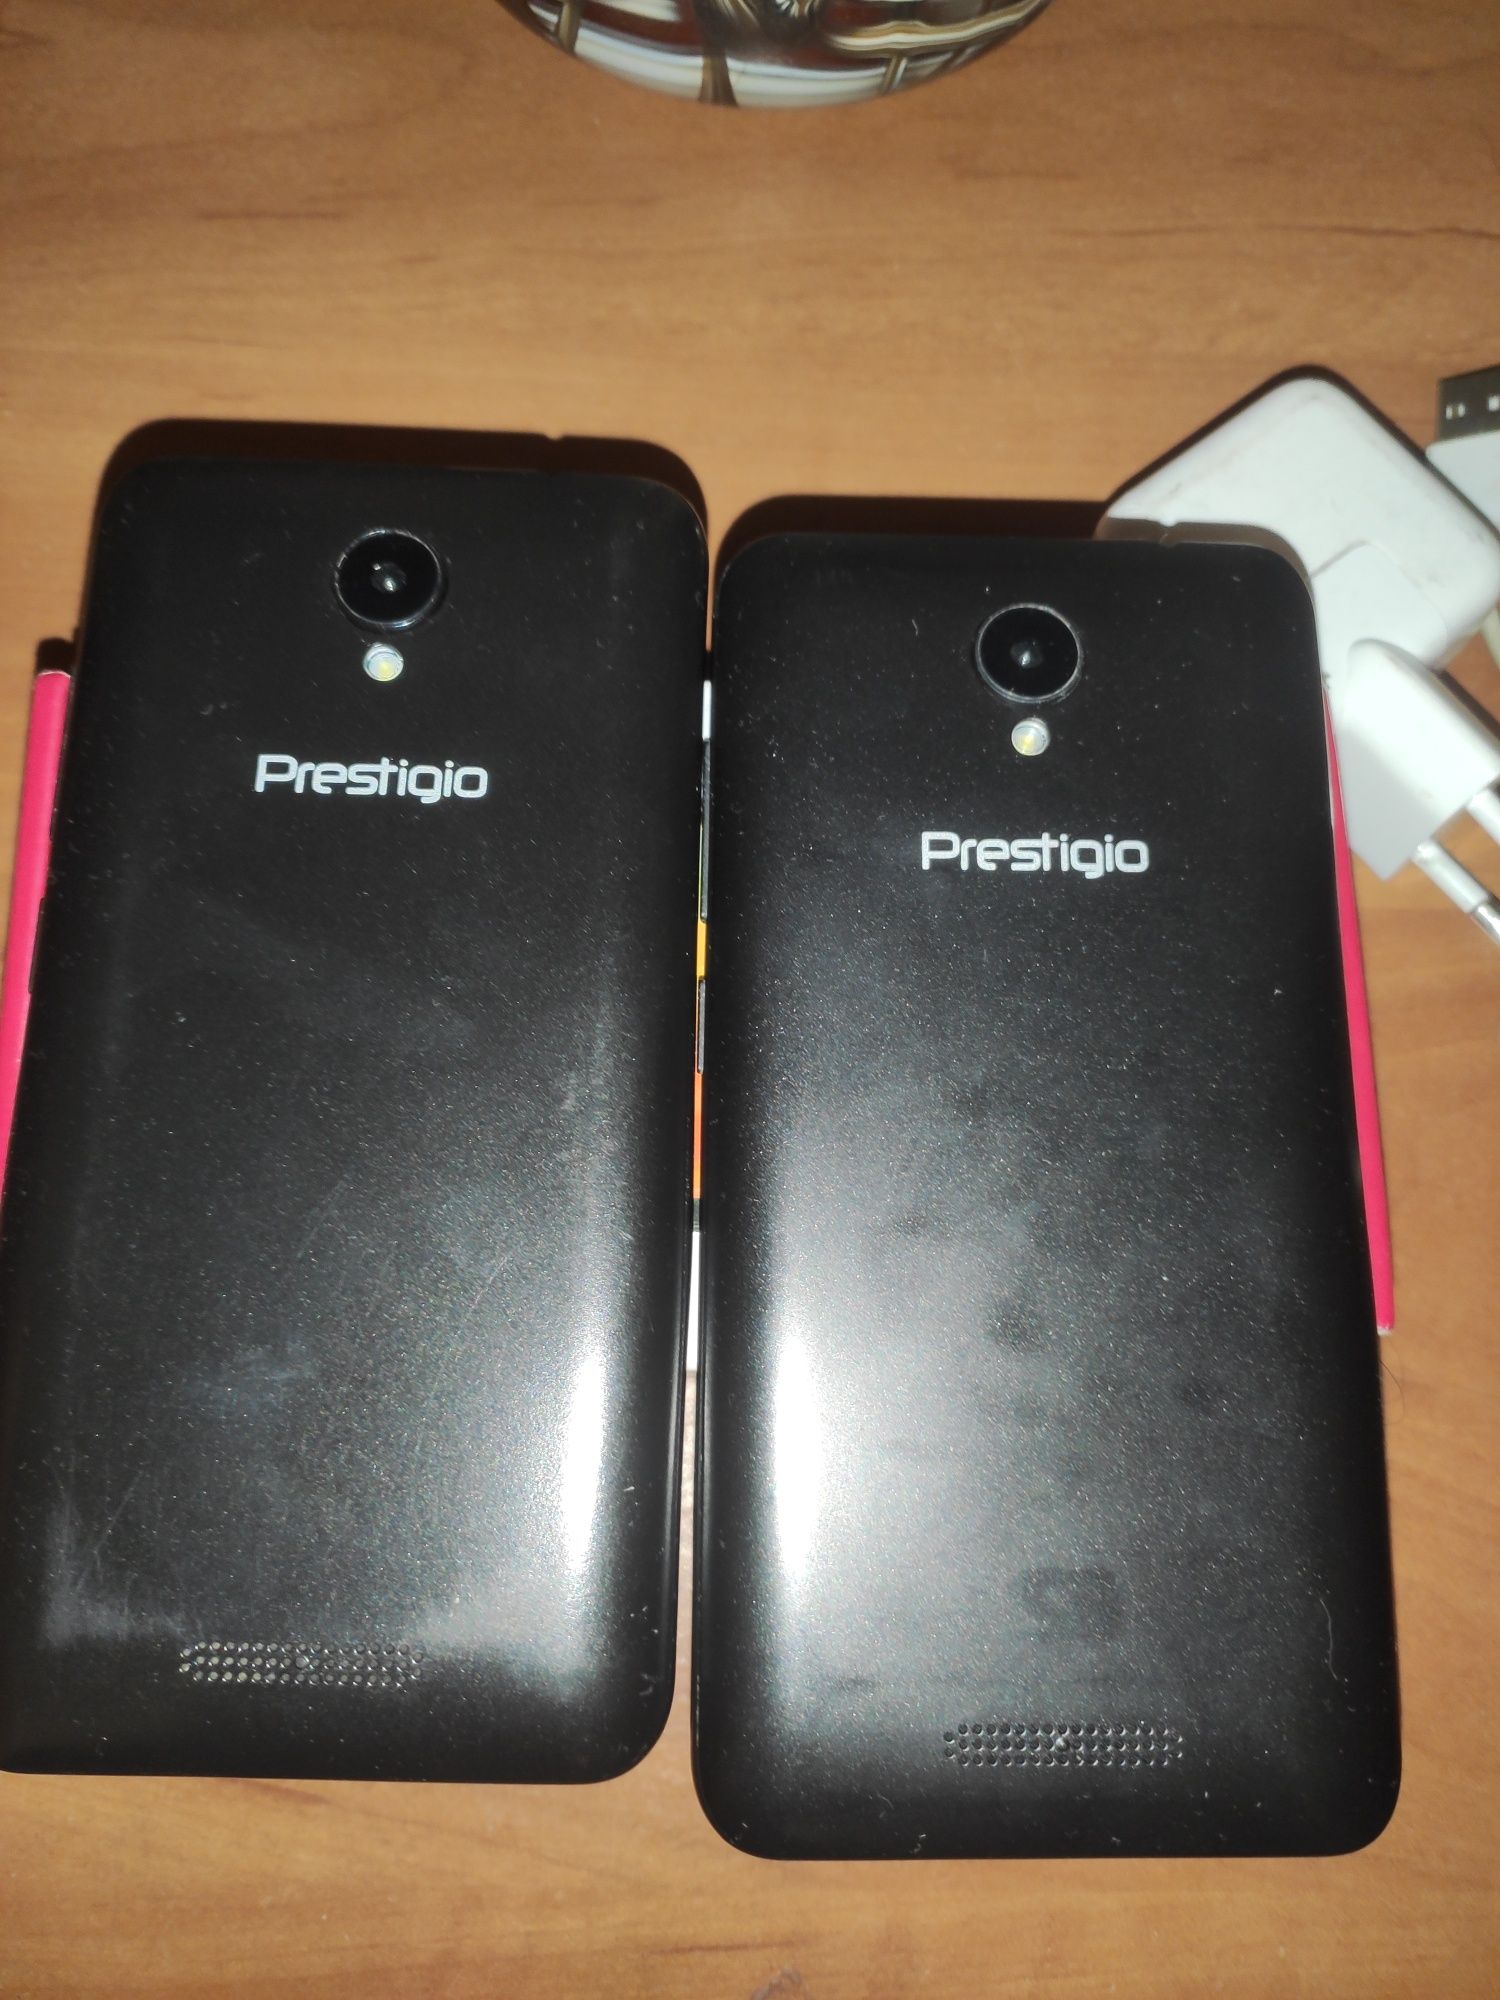 Телефон Prestigio G3 psp3510 ціна за 2 телефона 1 полностью рабочий